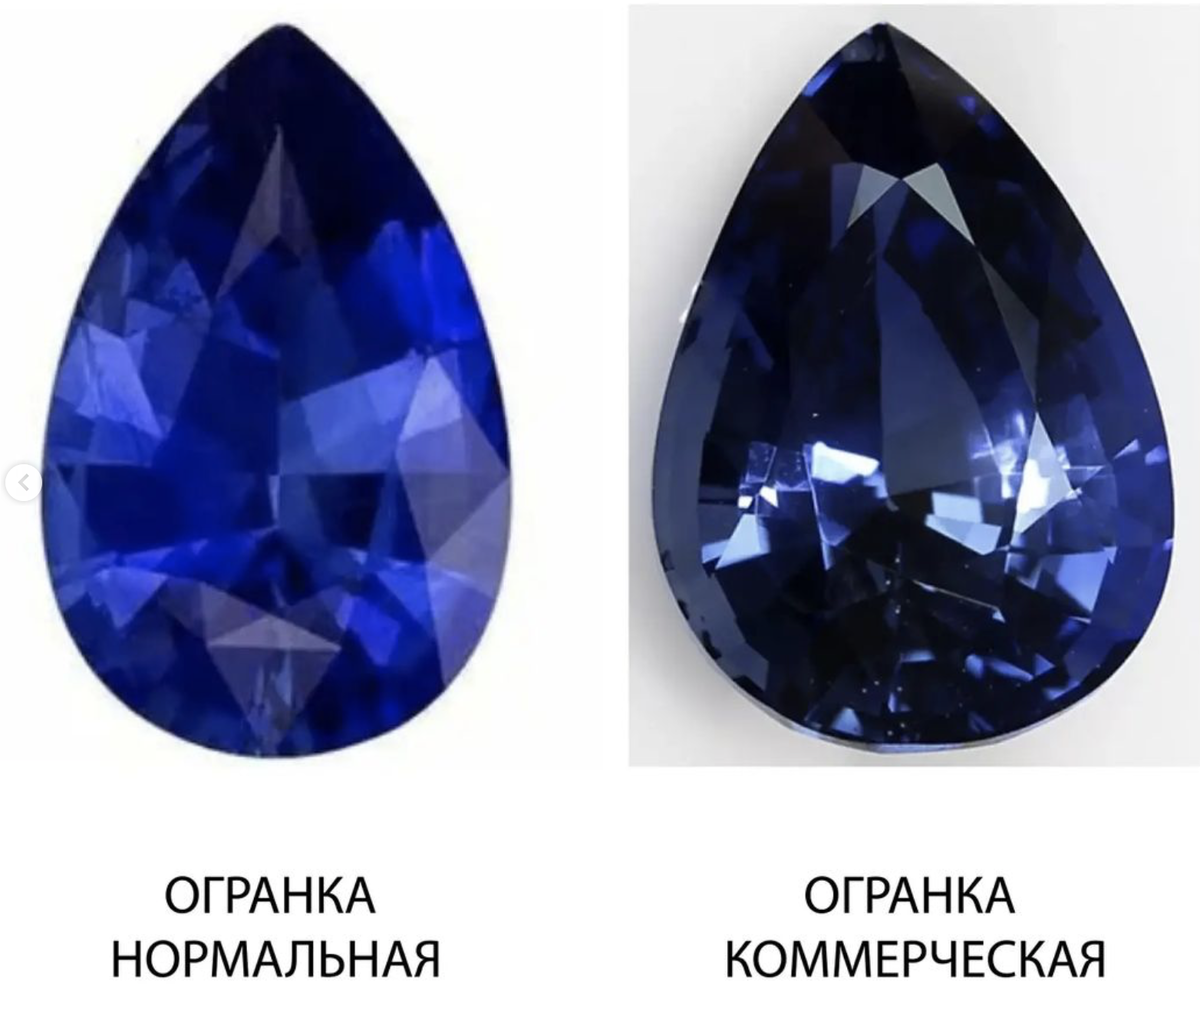 Сколько стоят самоцветы. Стоимость драгоценных камней. Как обрабатывают Алмазы. Драгоценные камни цена. Сравнение стоимости драгоценных камней.